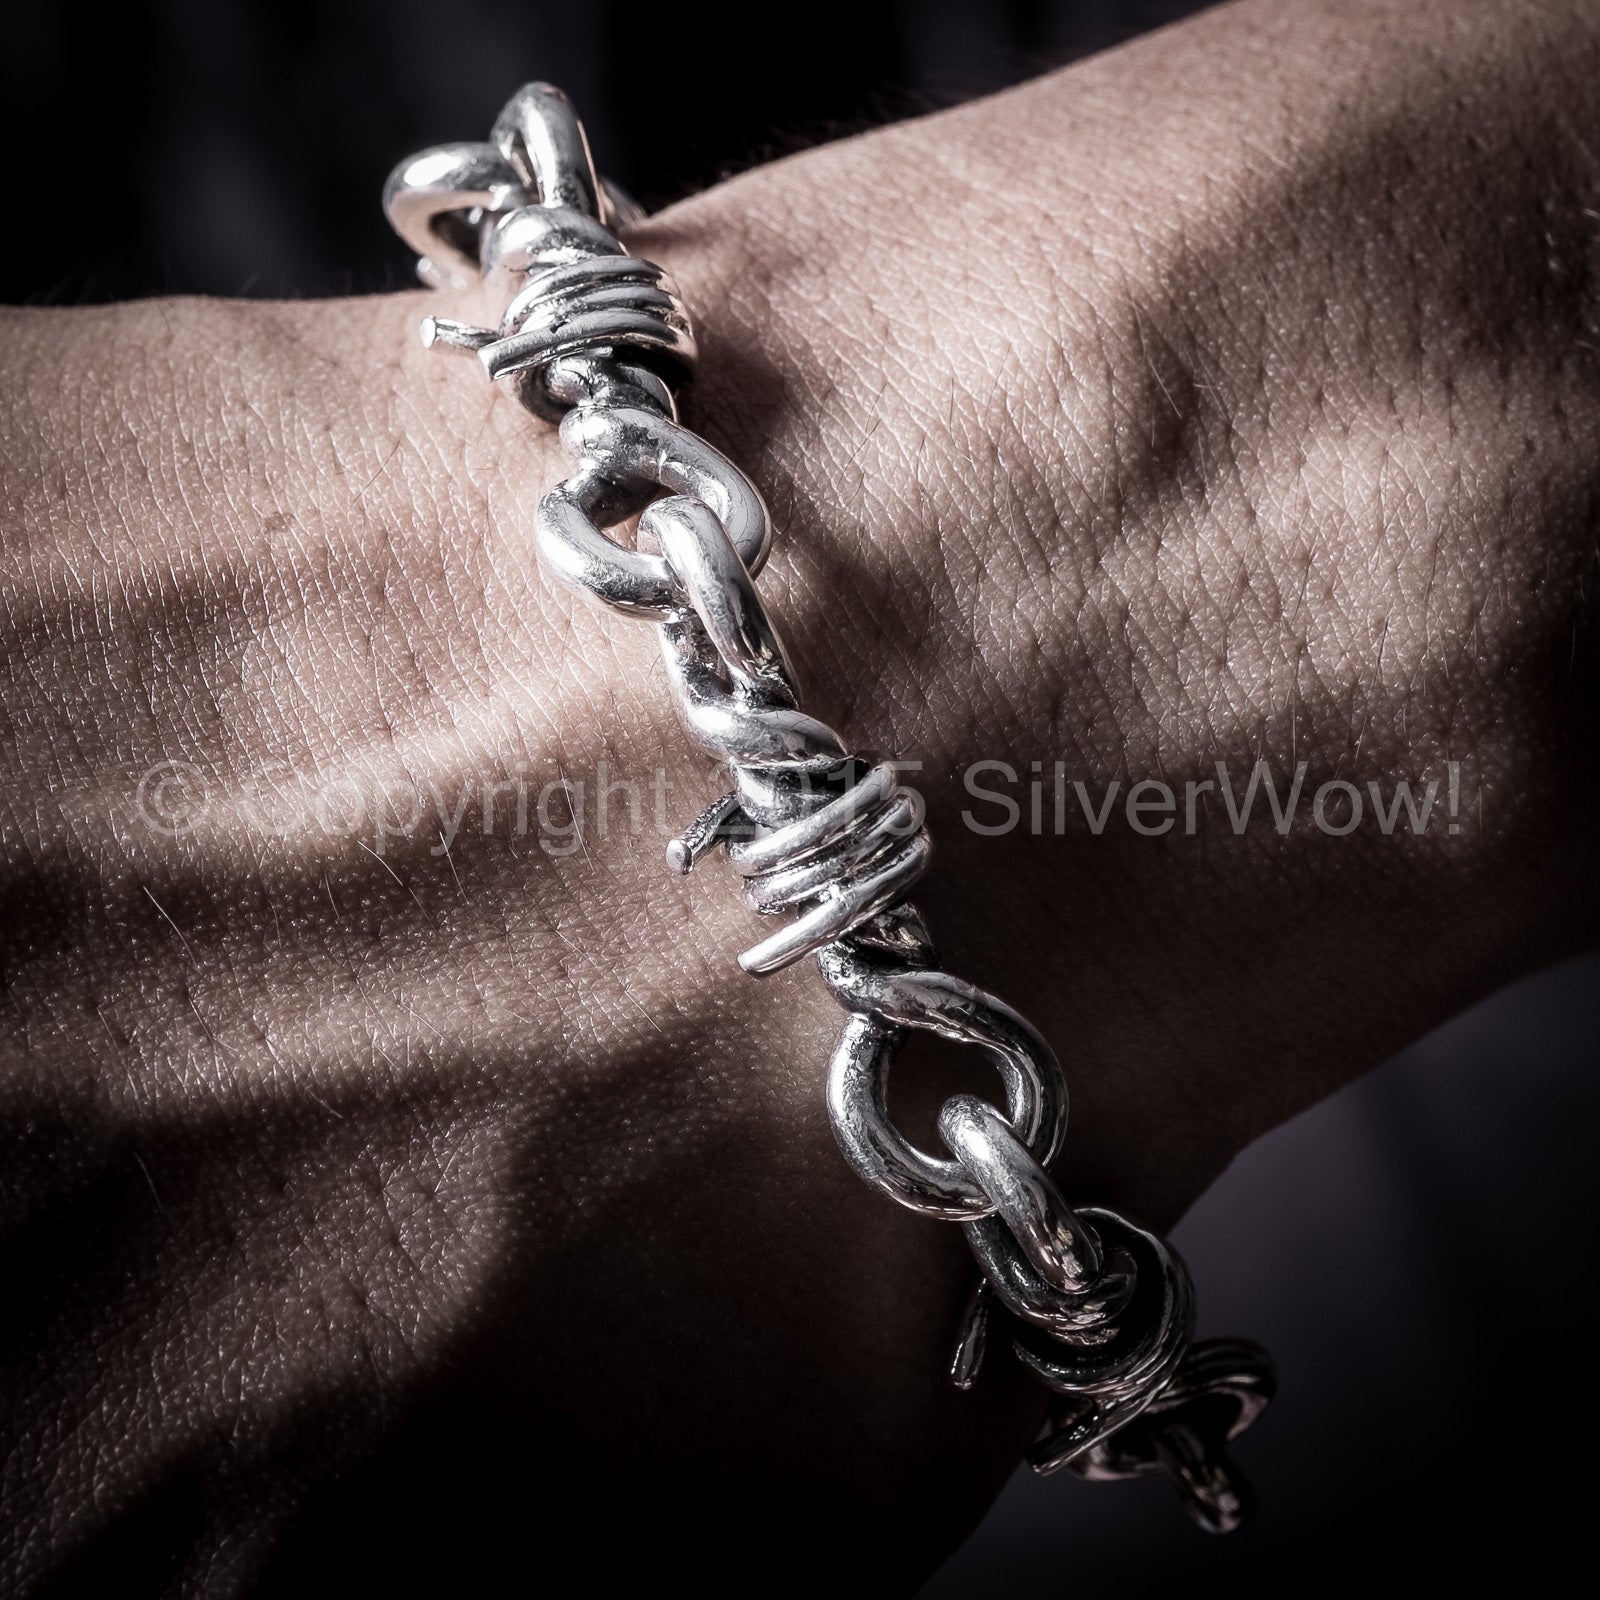 https://silverwow.net/cdn/shop/products/mens-barb-wire-silver-bracelet-7.jpg?v=1595742137&width=1946